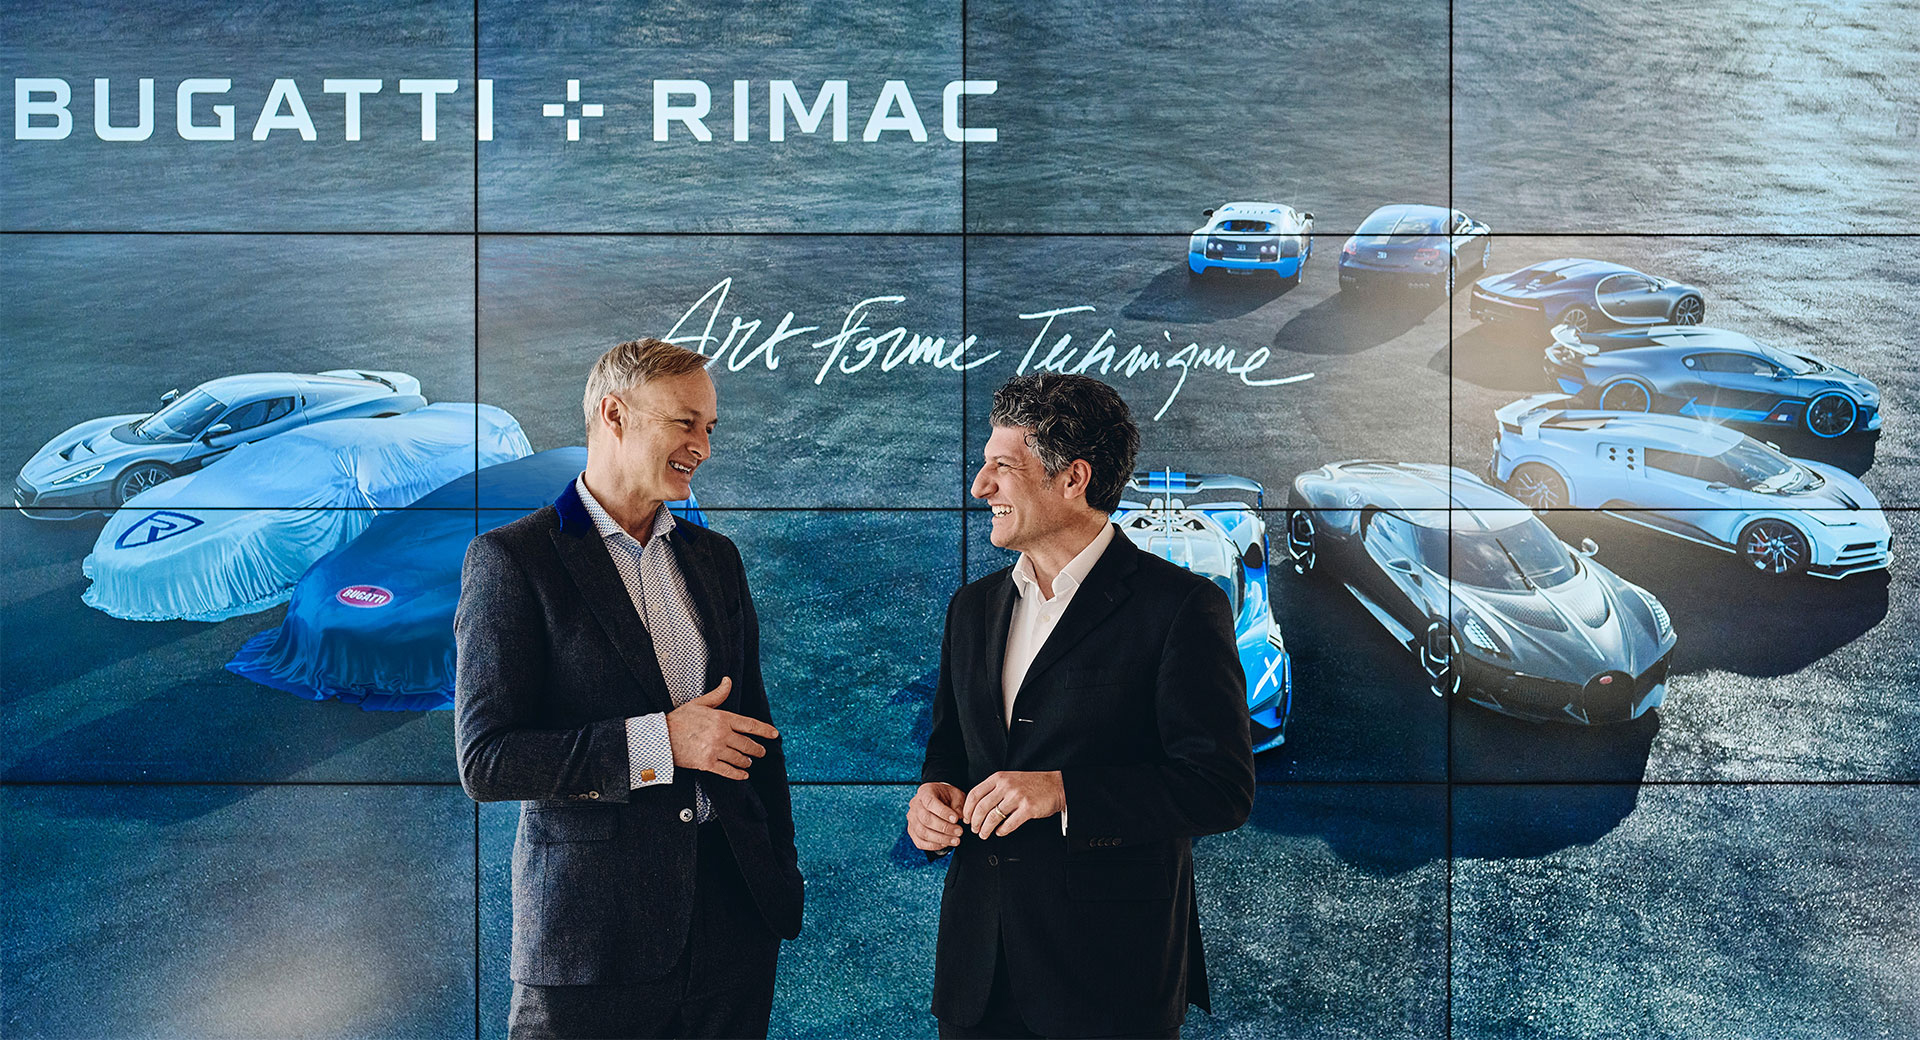 La imagen deja poco margen de duda a que sean nuevos modelos electrificados de Bugatti y Rimac